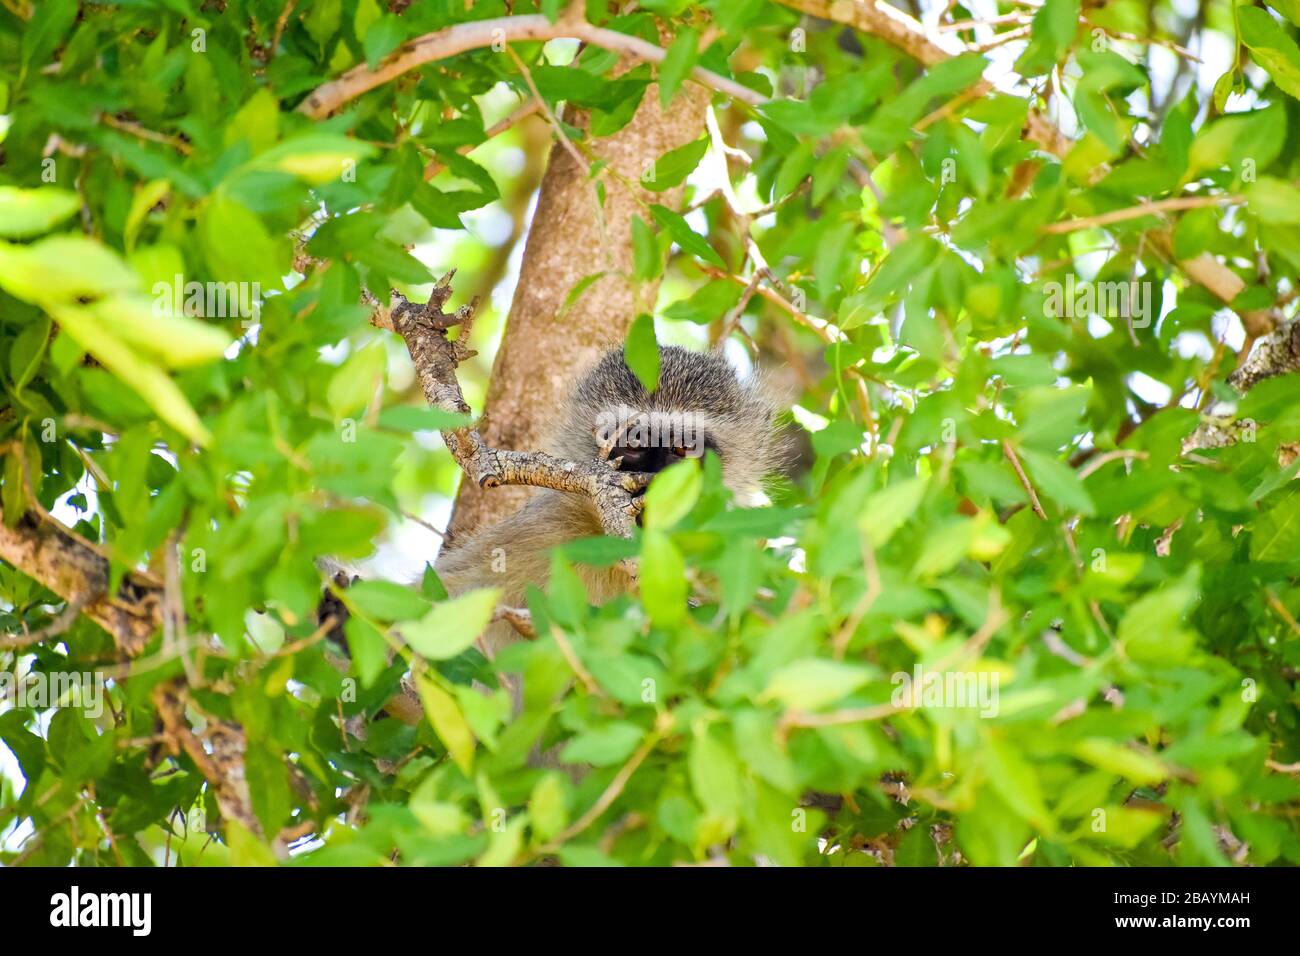 un mono vervet colgado en un árbol Foto de stock